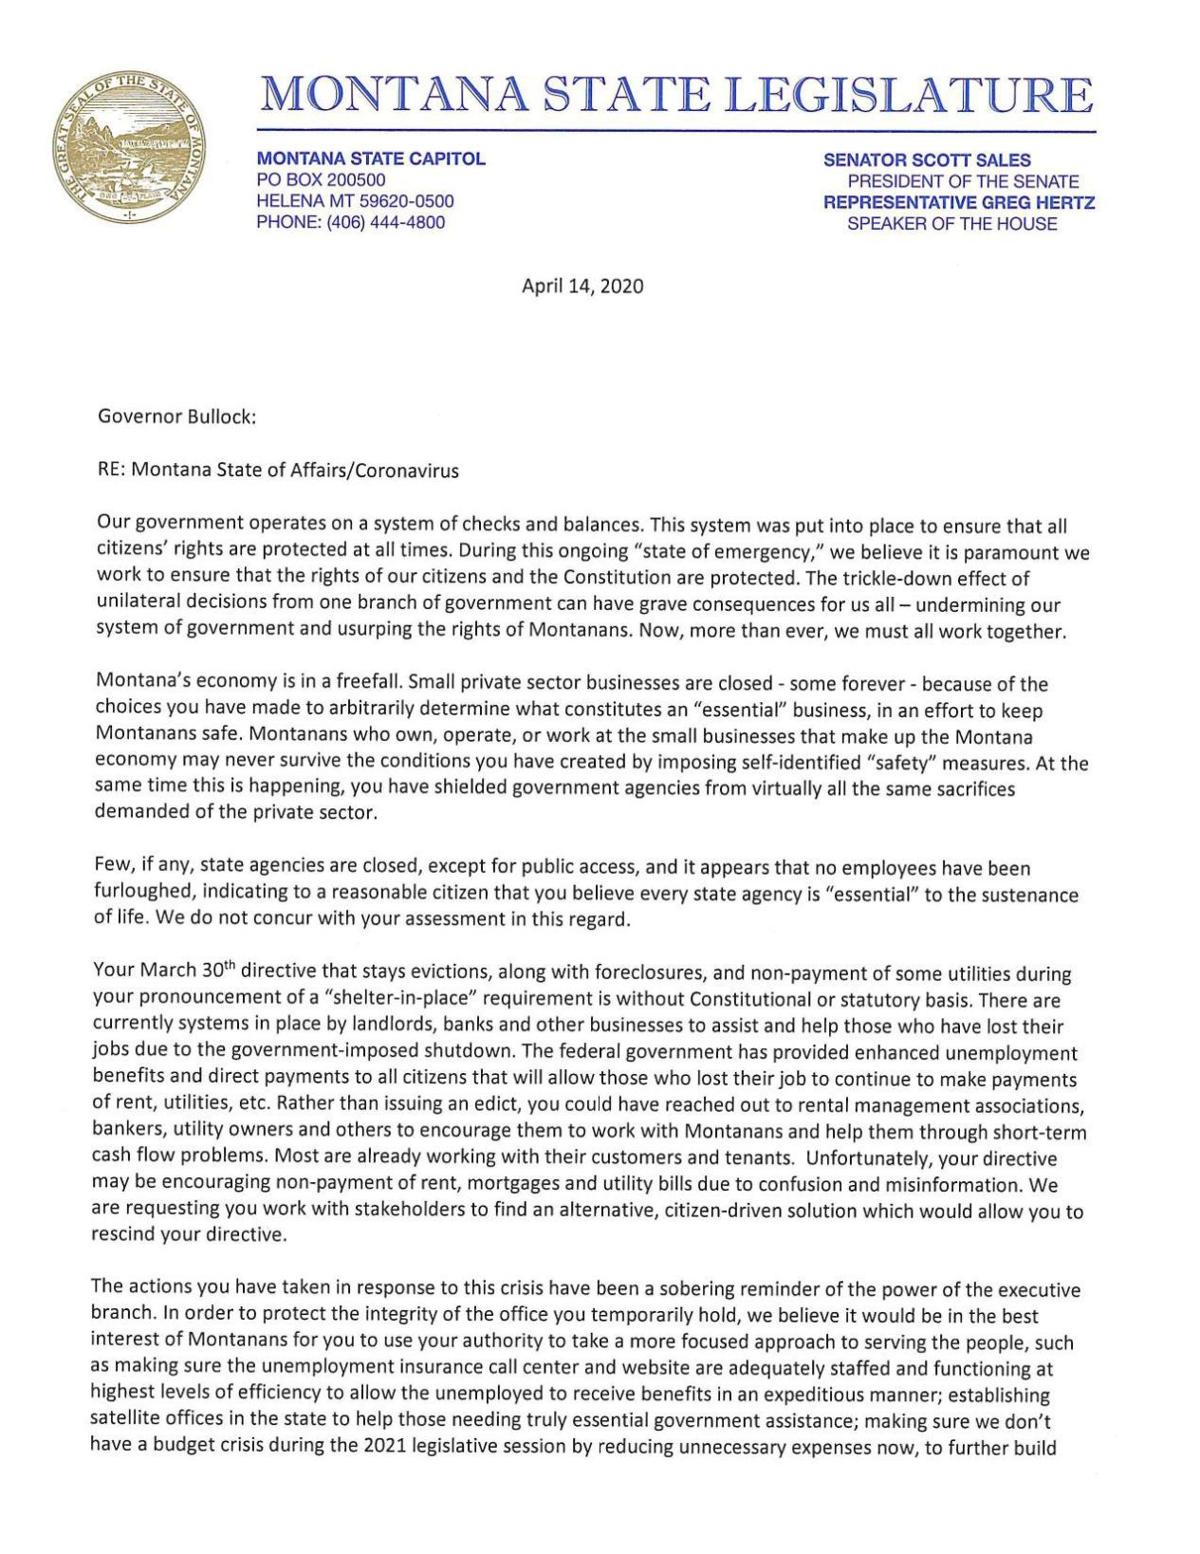 Montana State Legislator letter to governor  Regional  khq.com